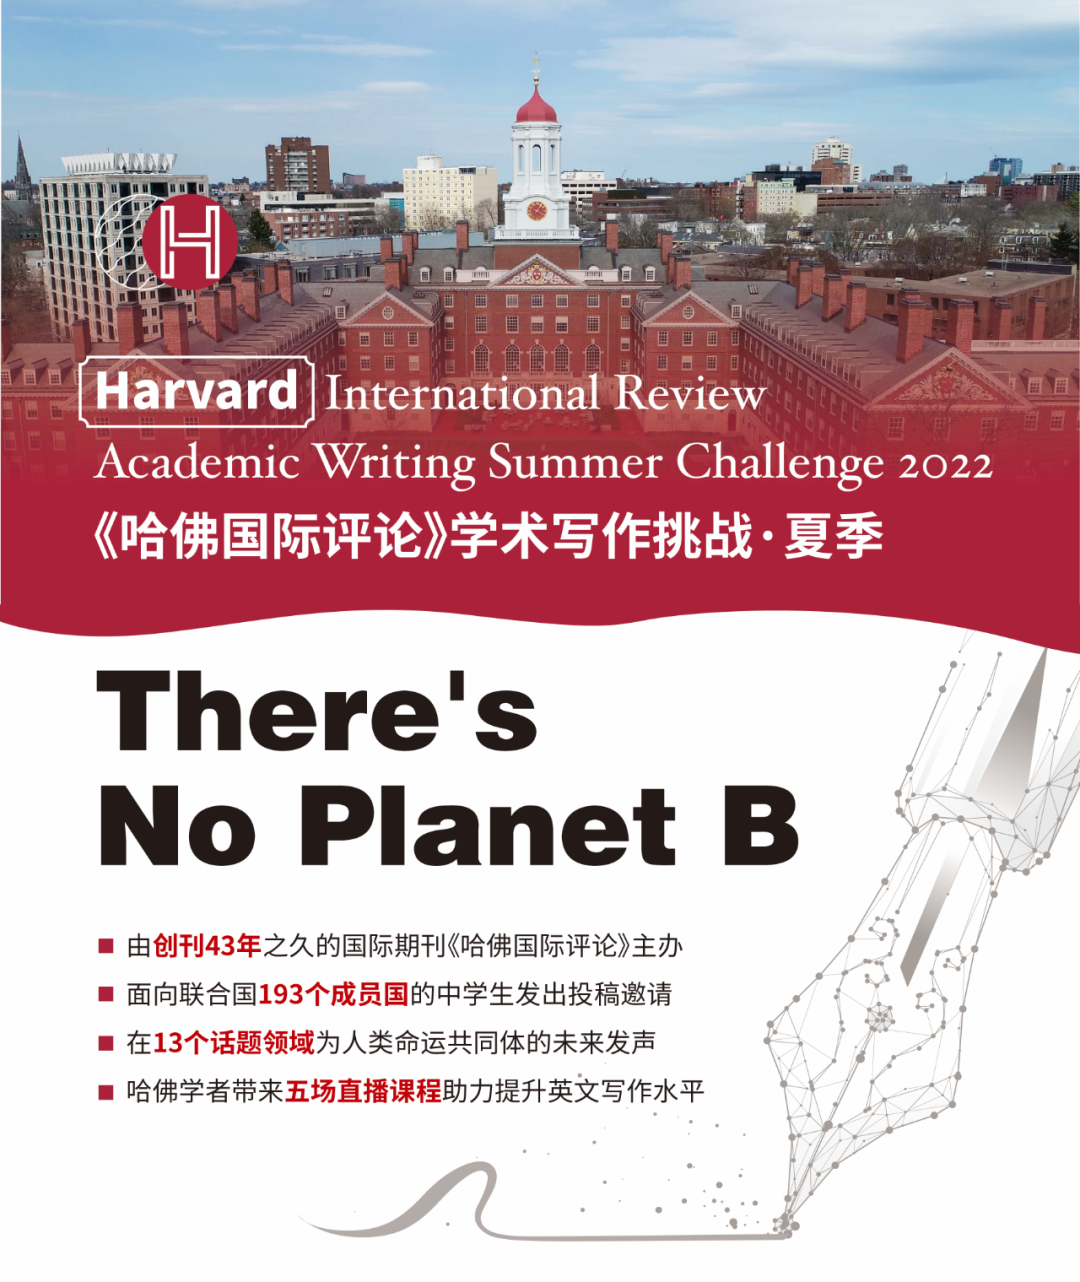 哈佛国际评论学术写作挑战，夏季备赛报名中！